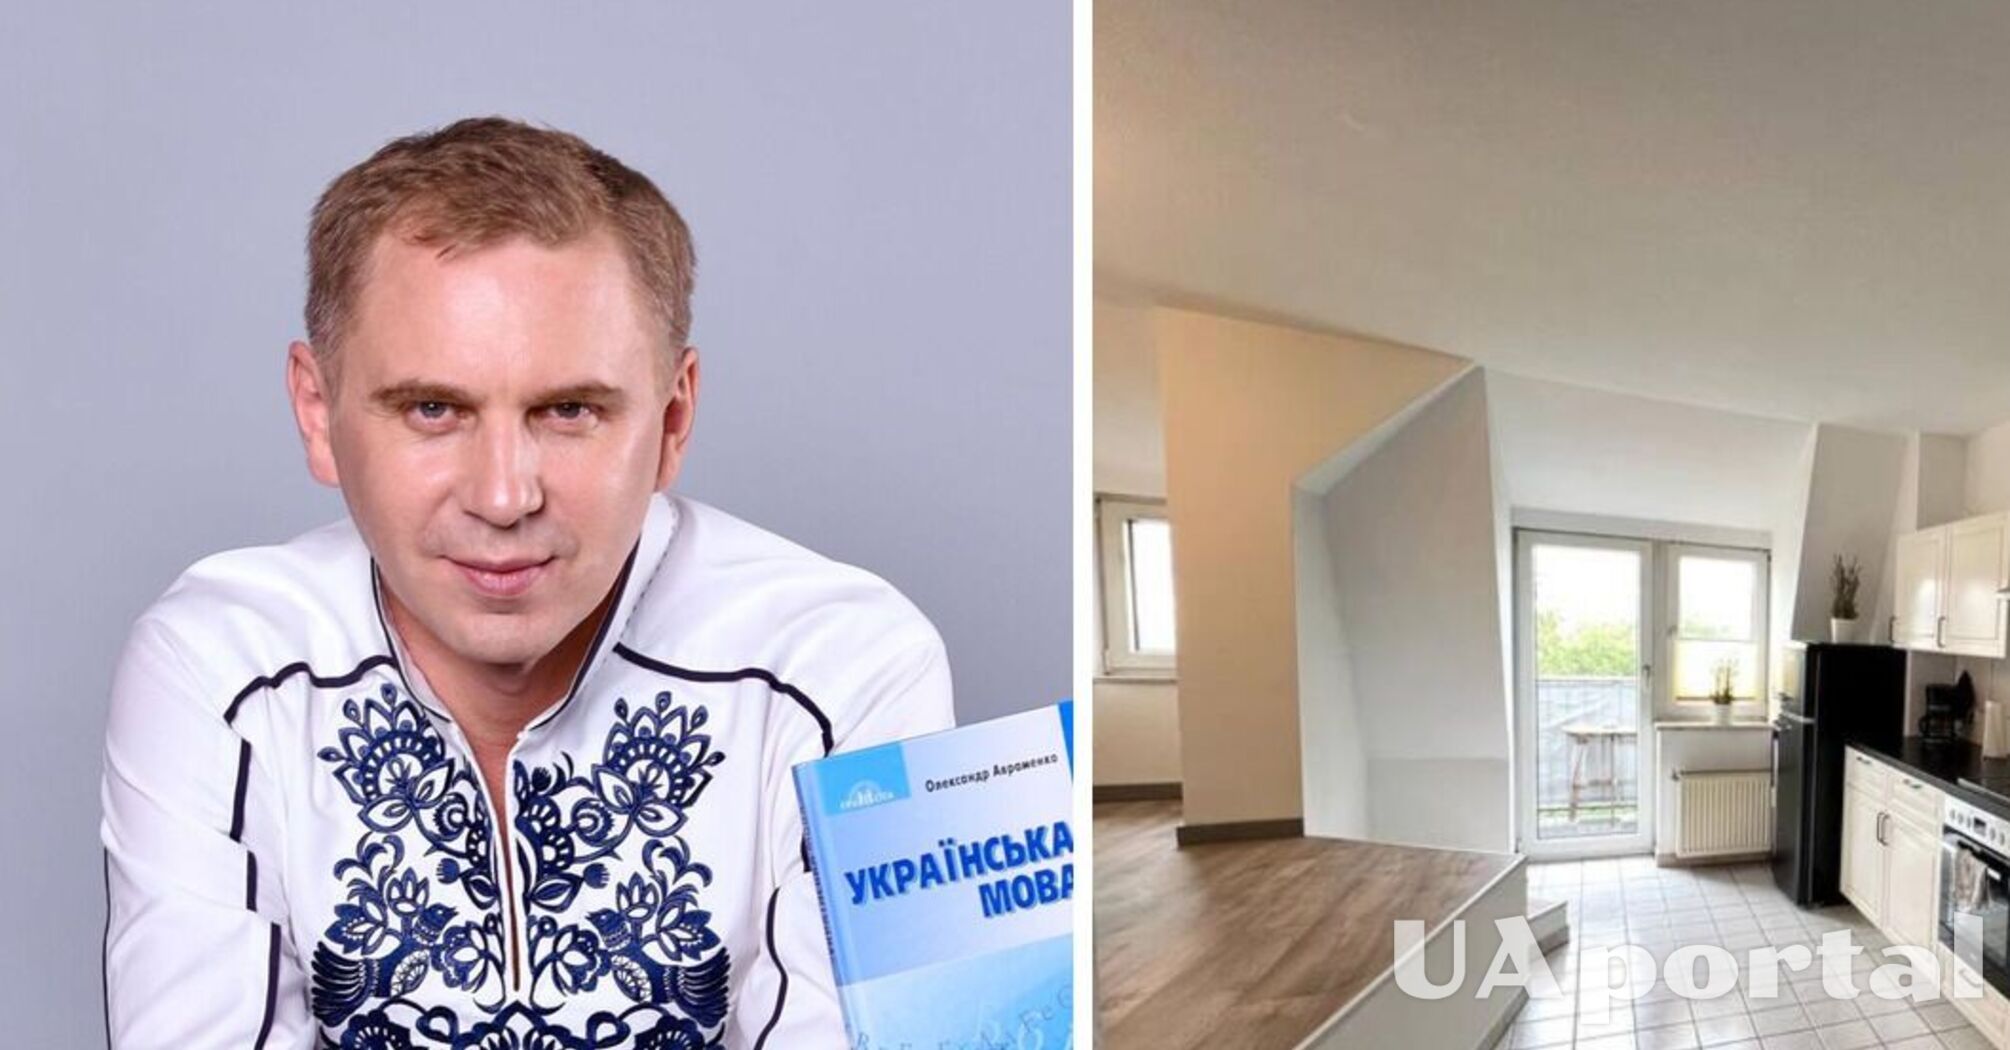 Как сказать на украинском 'квартира со всеми удобствами': видео-урок от Авраменко